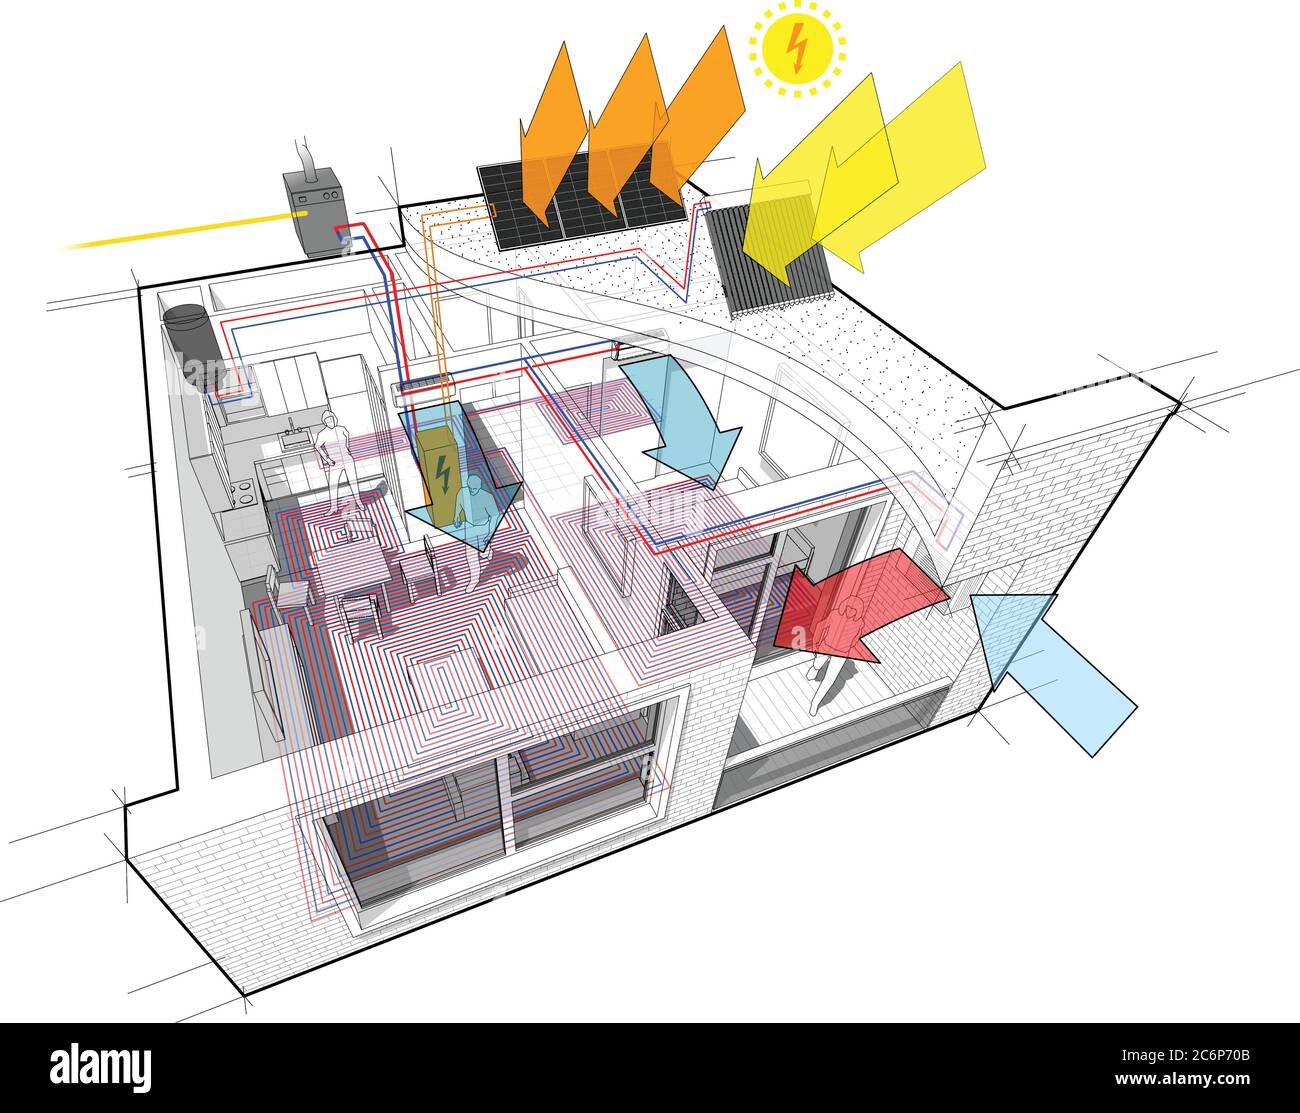 Schema di appartamenti con riscaldamento a pavimento e caldaia a gas, pannelli fotovoltaici e solari e aria condizionata Illustrazione Vettoriale